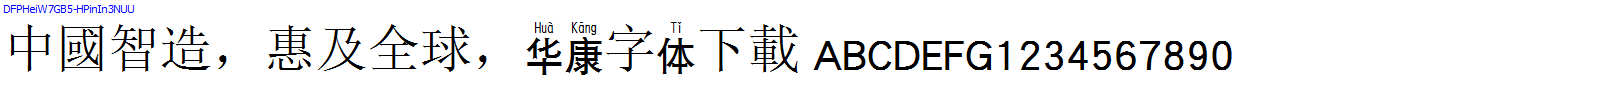 華康字體DFPHeiW7GB5-HPinIn3NUU.TTF